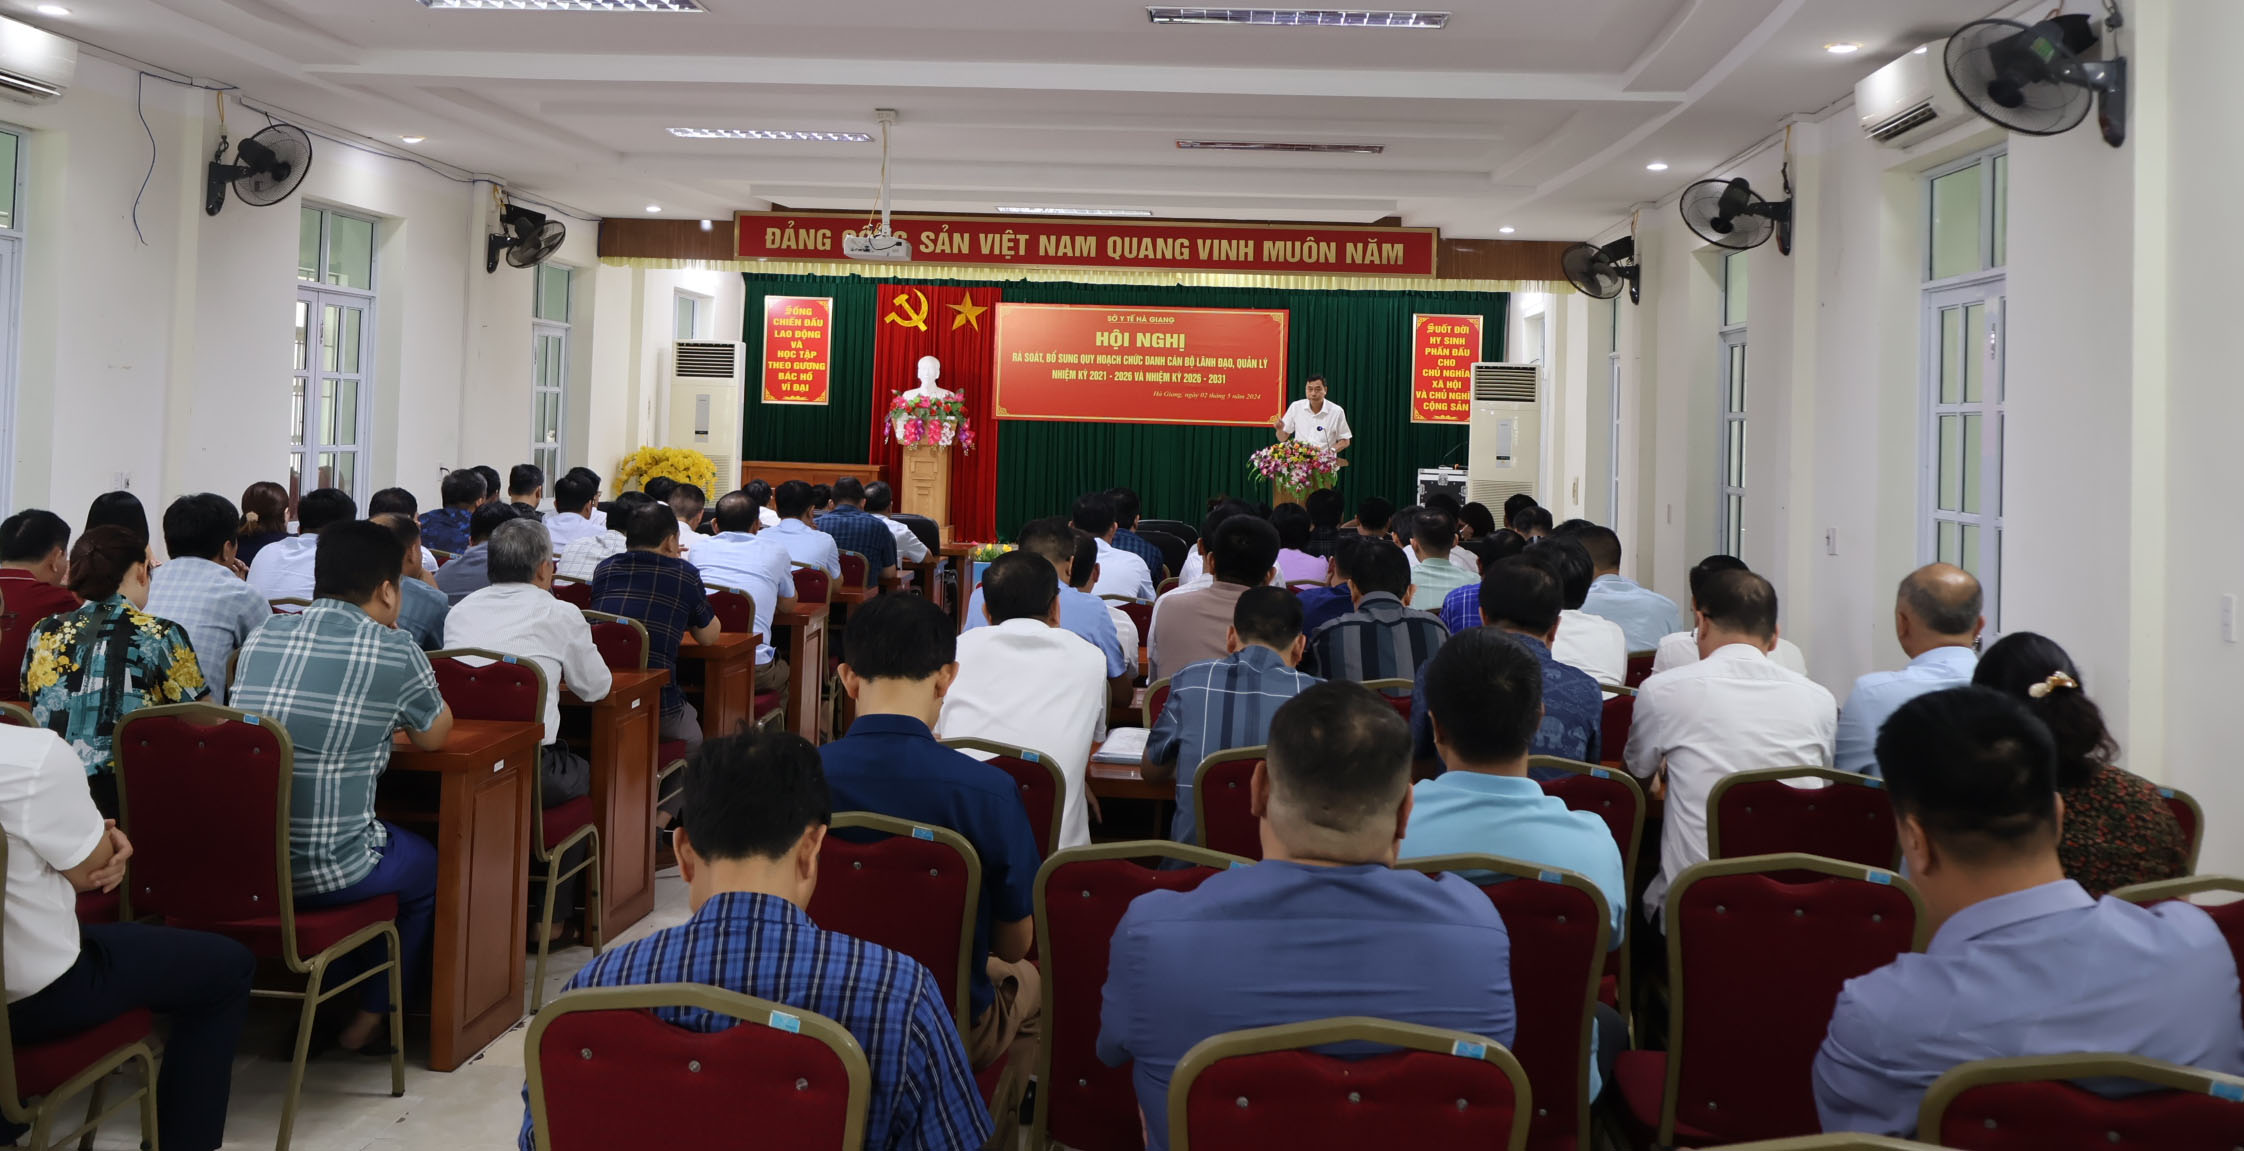 Đồng chí Nguyễn Văn Giao, Bí thư Đảng ủy, Giám đốc Sở Y tế triển khai các văn bản hướng dẫn tại Hội nghị